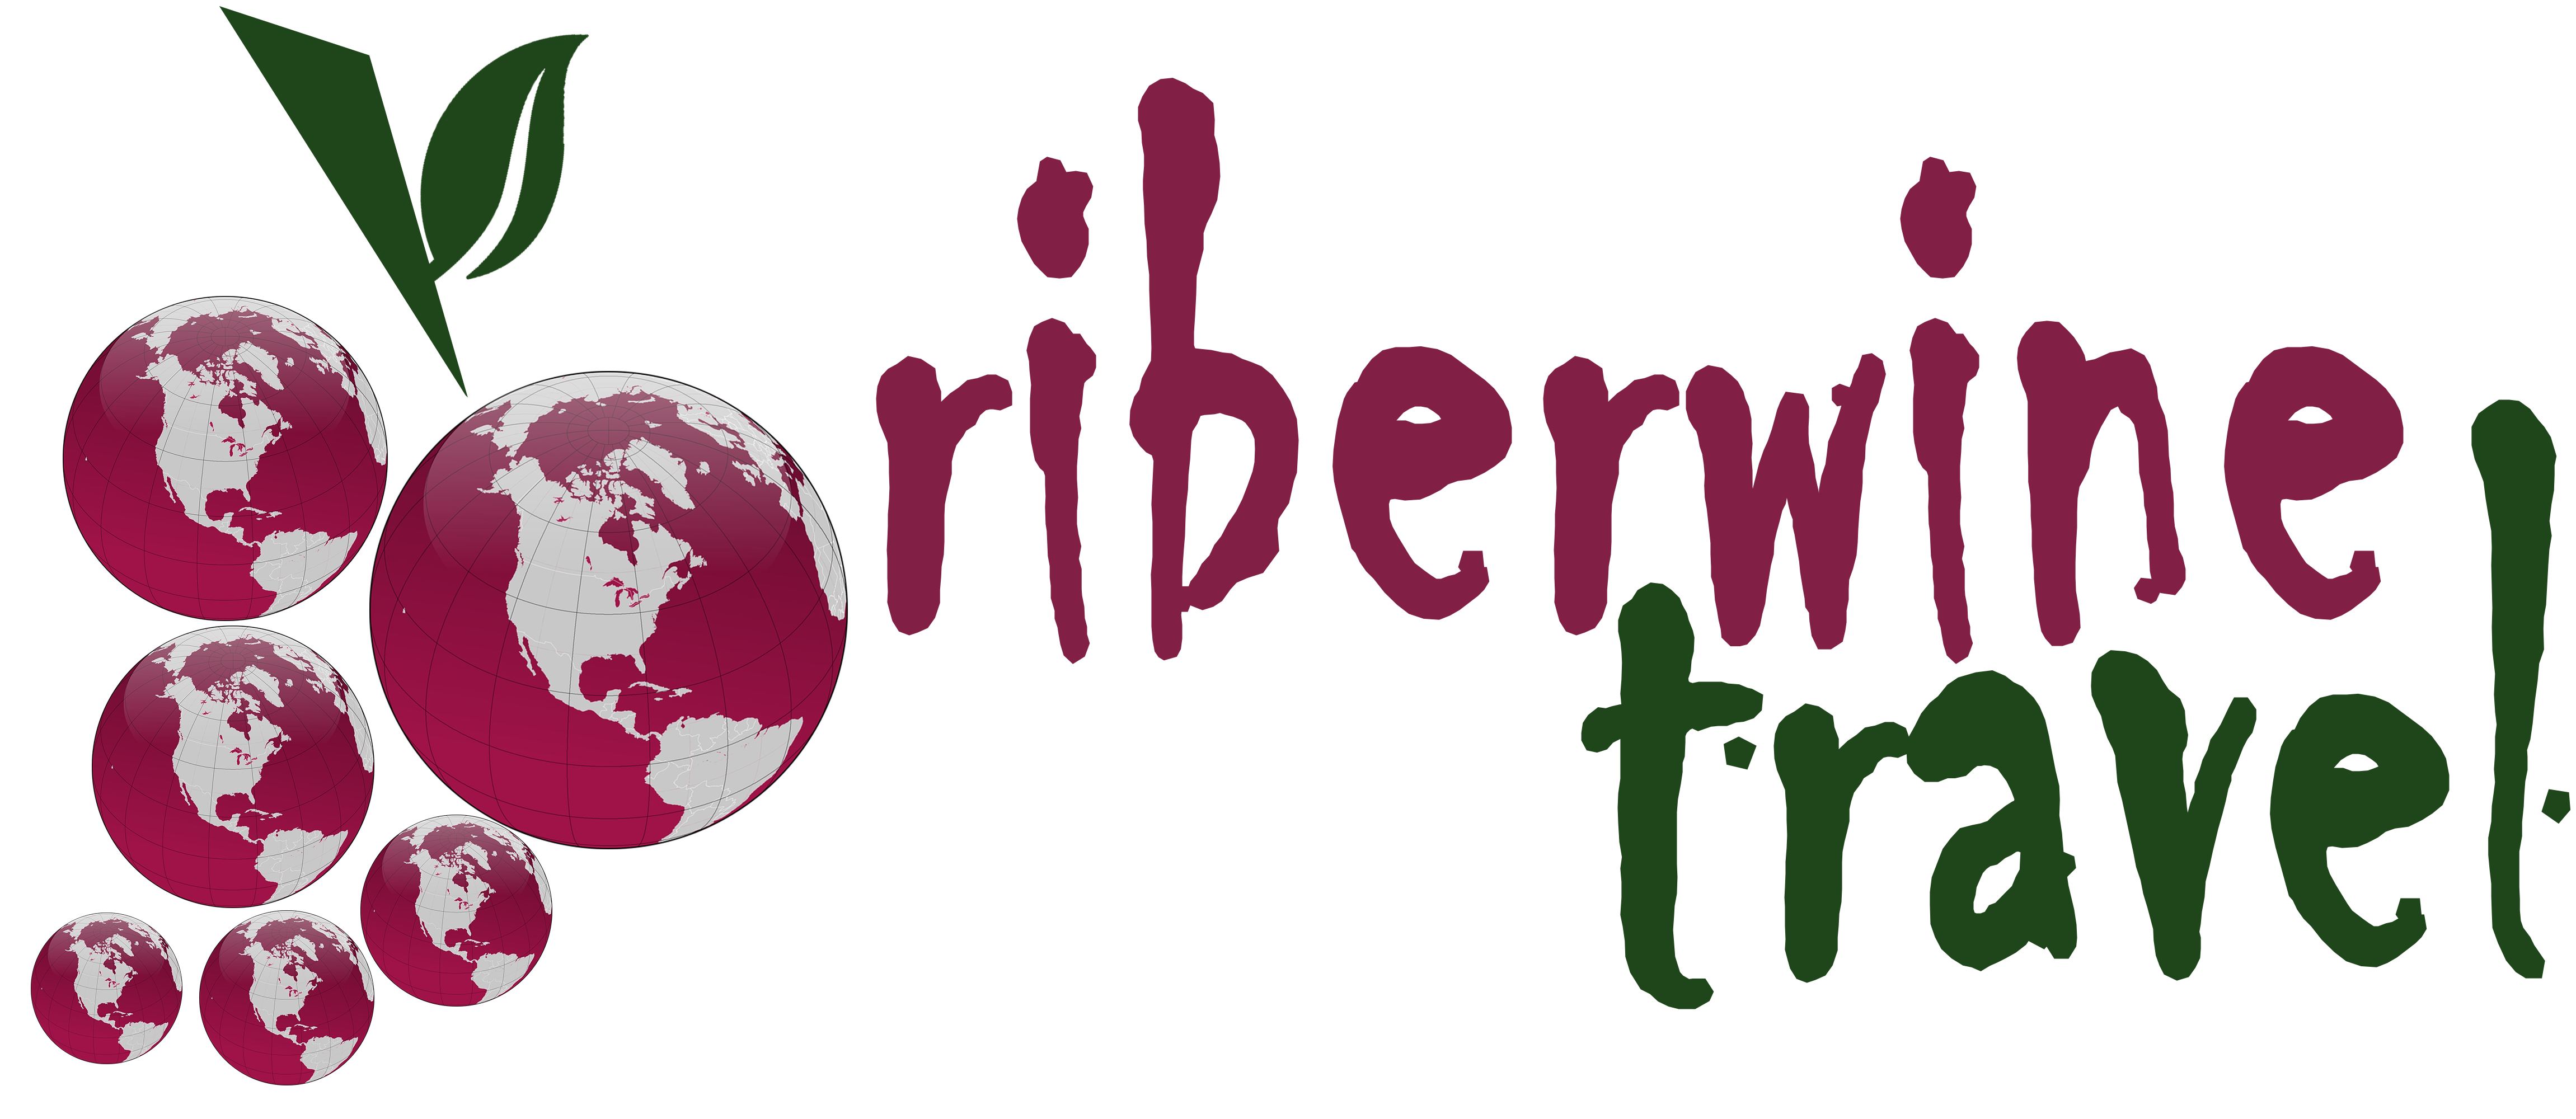 Riberwine Travel